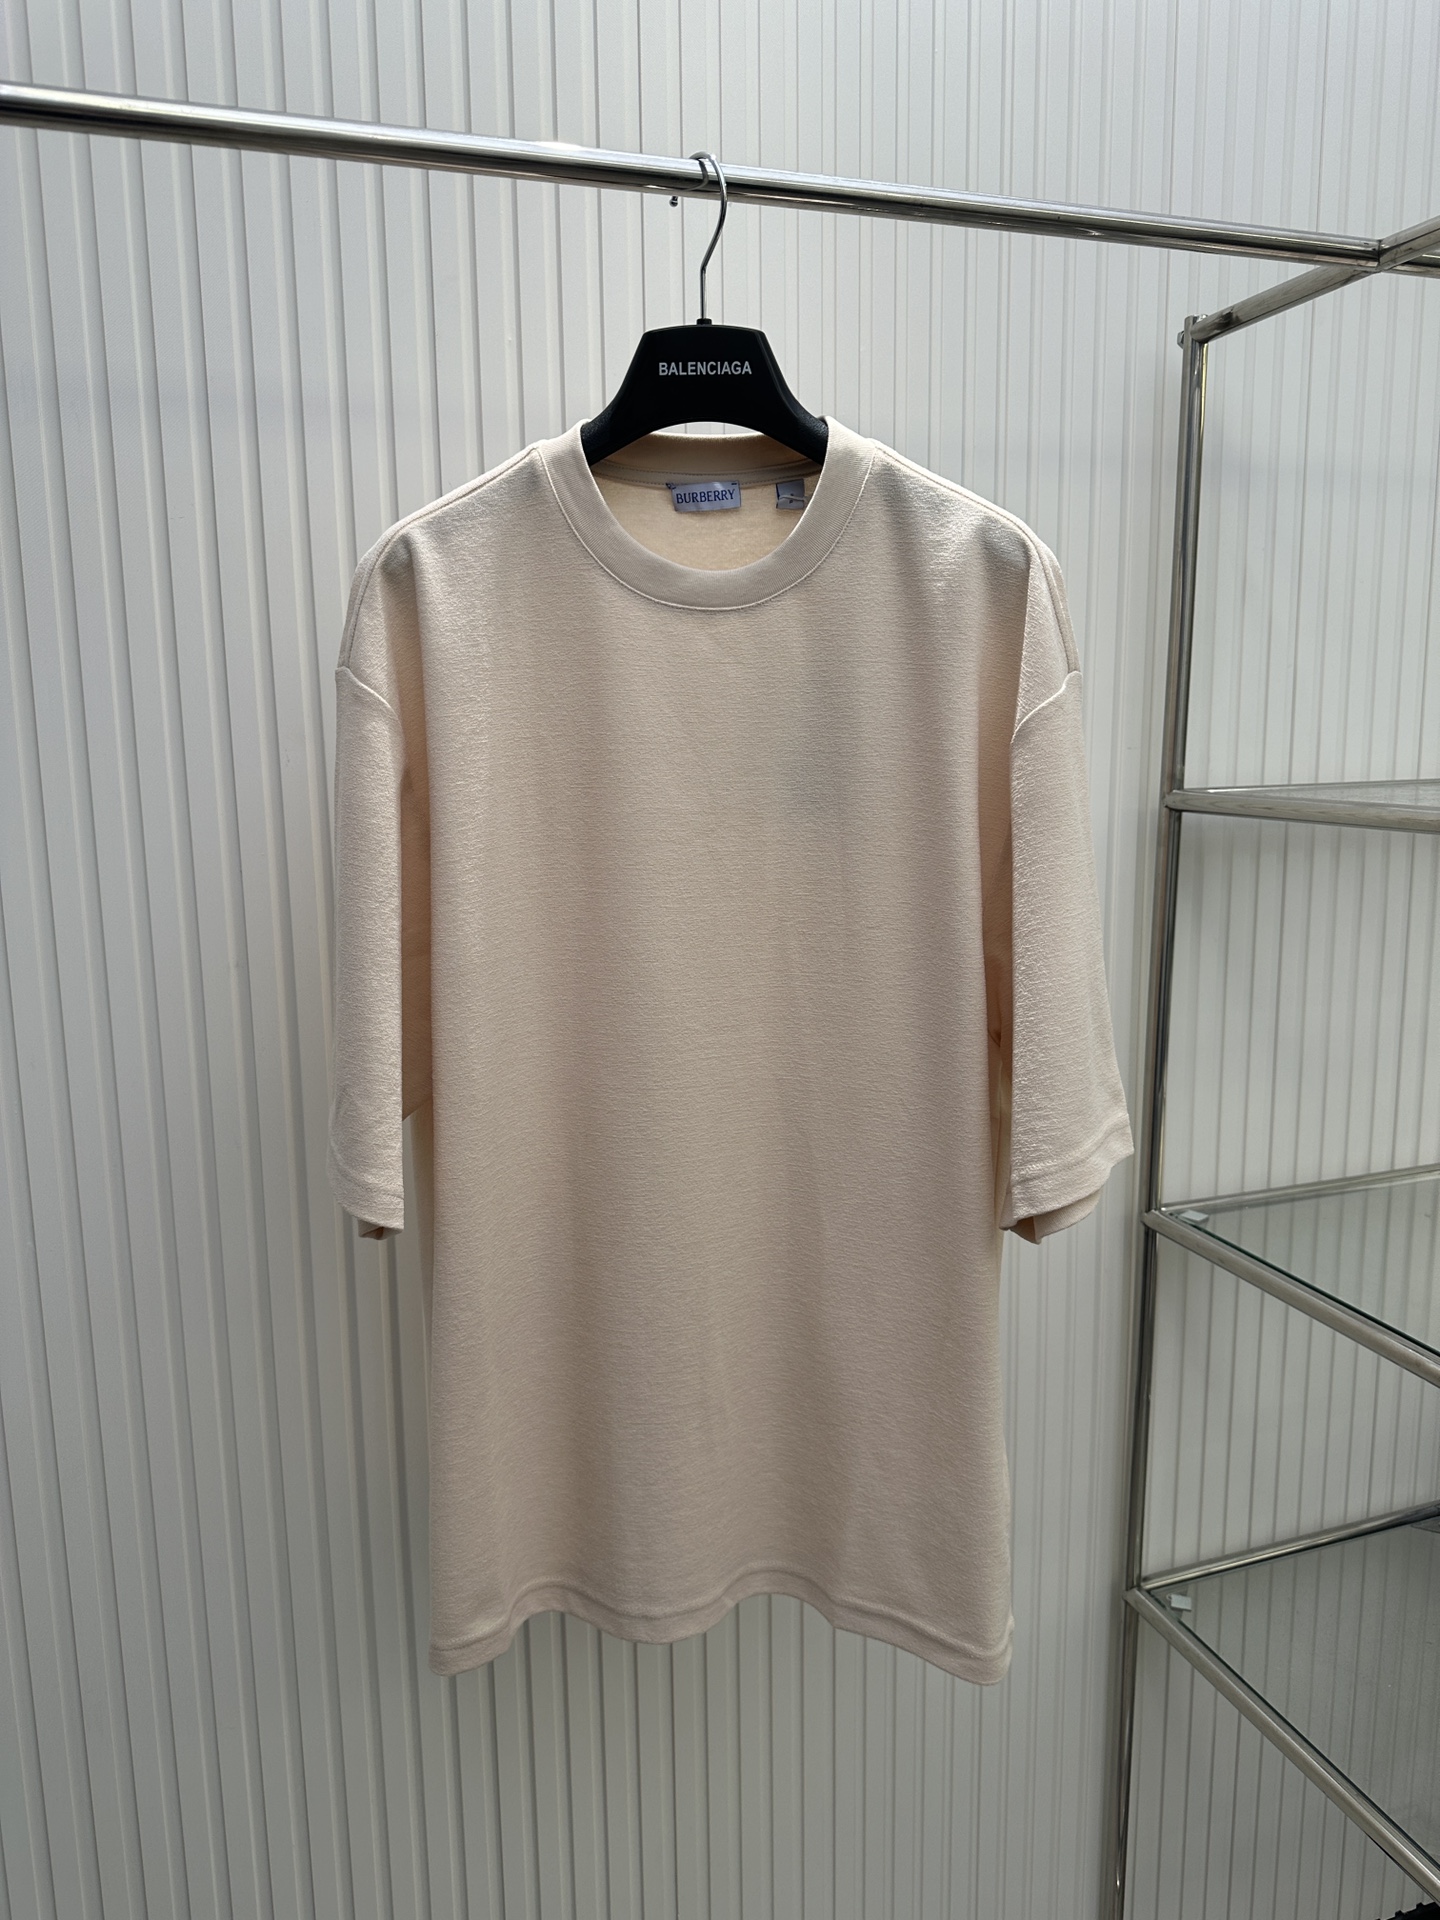 Burberry AAAAA+
 Clothing T-Shirt Cotton Short Sleeve